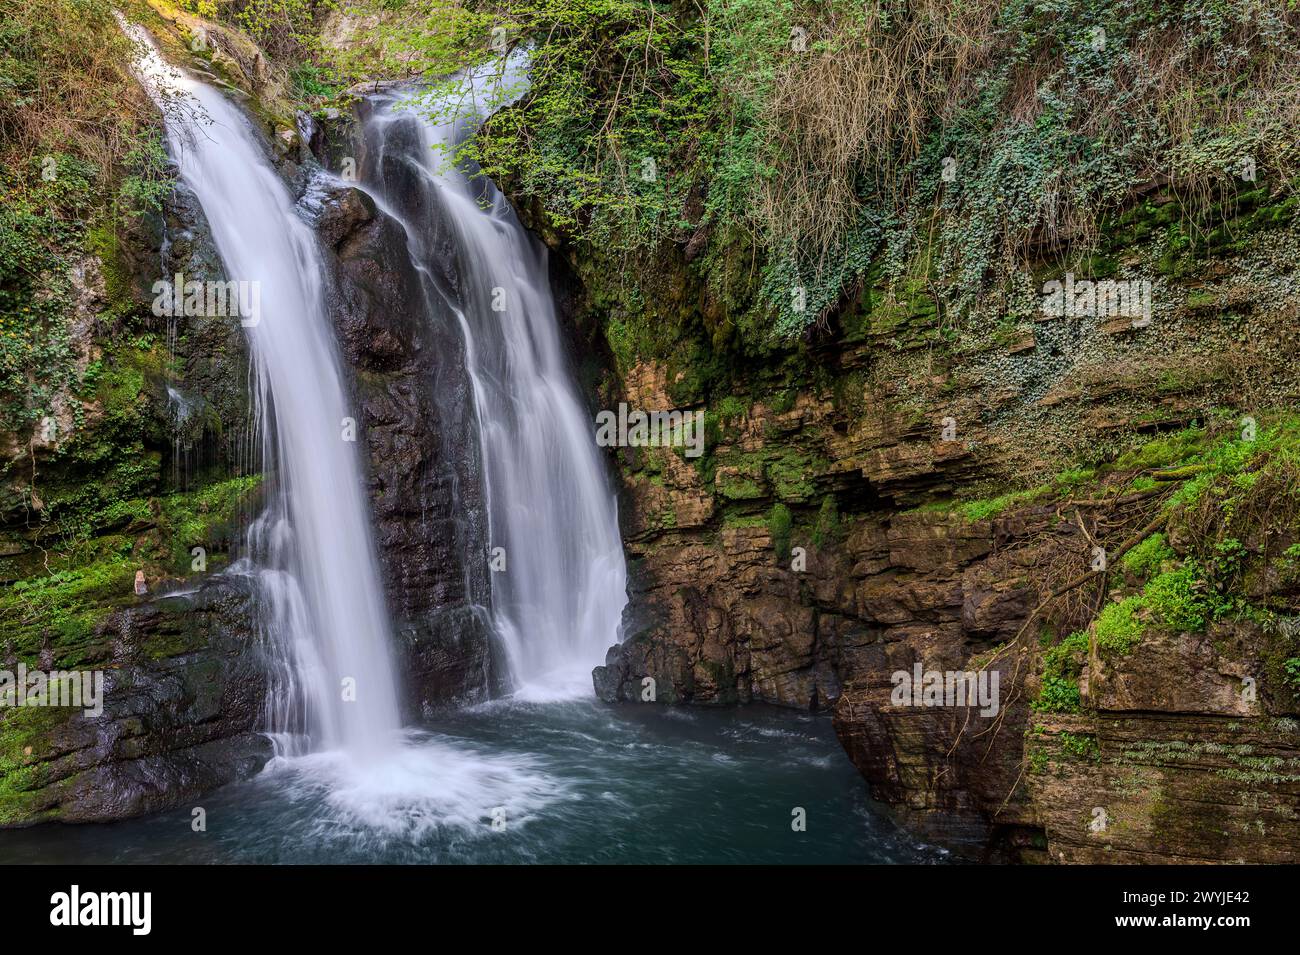 Au cœur d'un tout petit village de Molise, immergé dans une forêt enchantée et une nature florale, se dresse la cascade de Carpinone, l'une des plus fas Banque D'Images